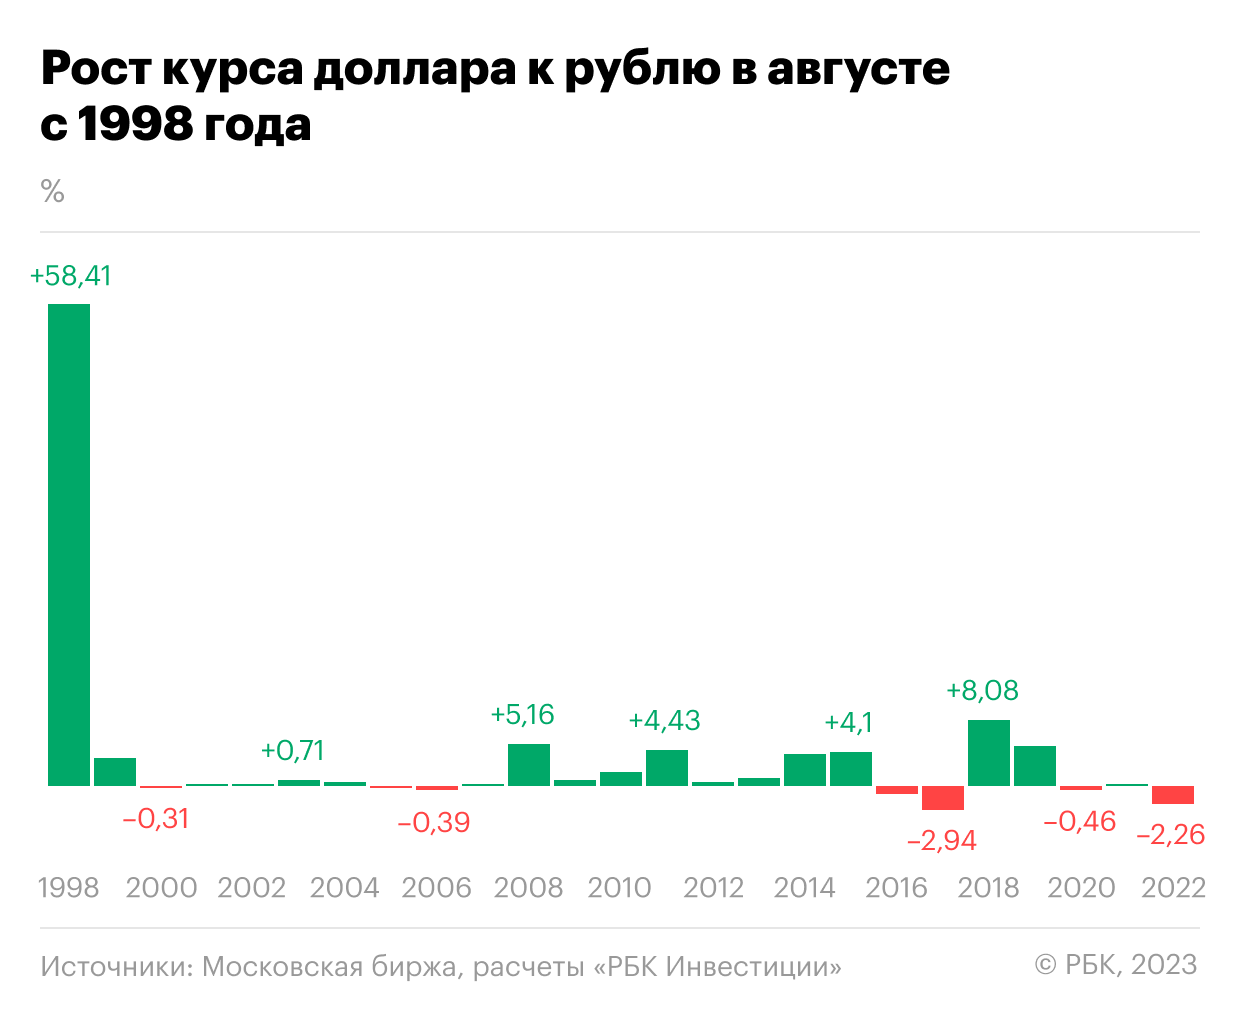 Рубль упал по итогам торгов вторника на фоне последних данных о дефиците бюджета РФ